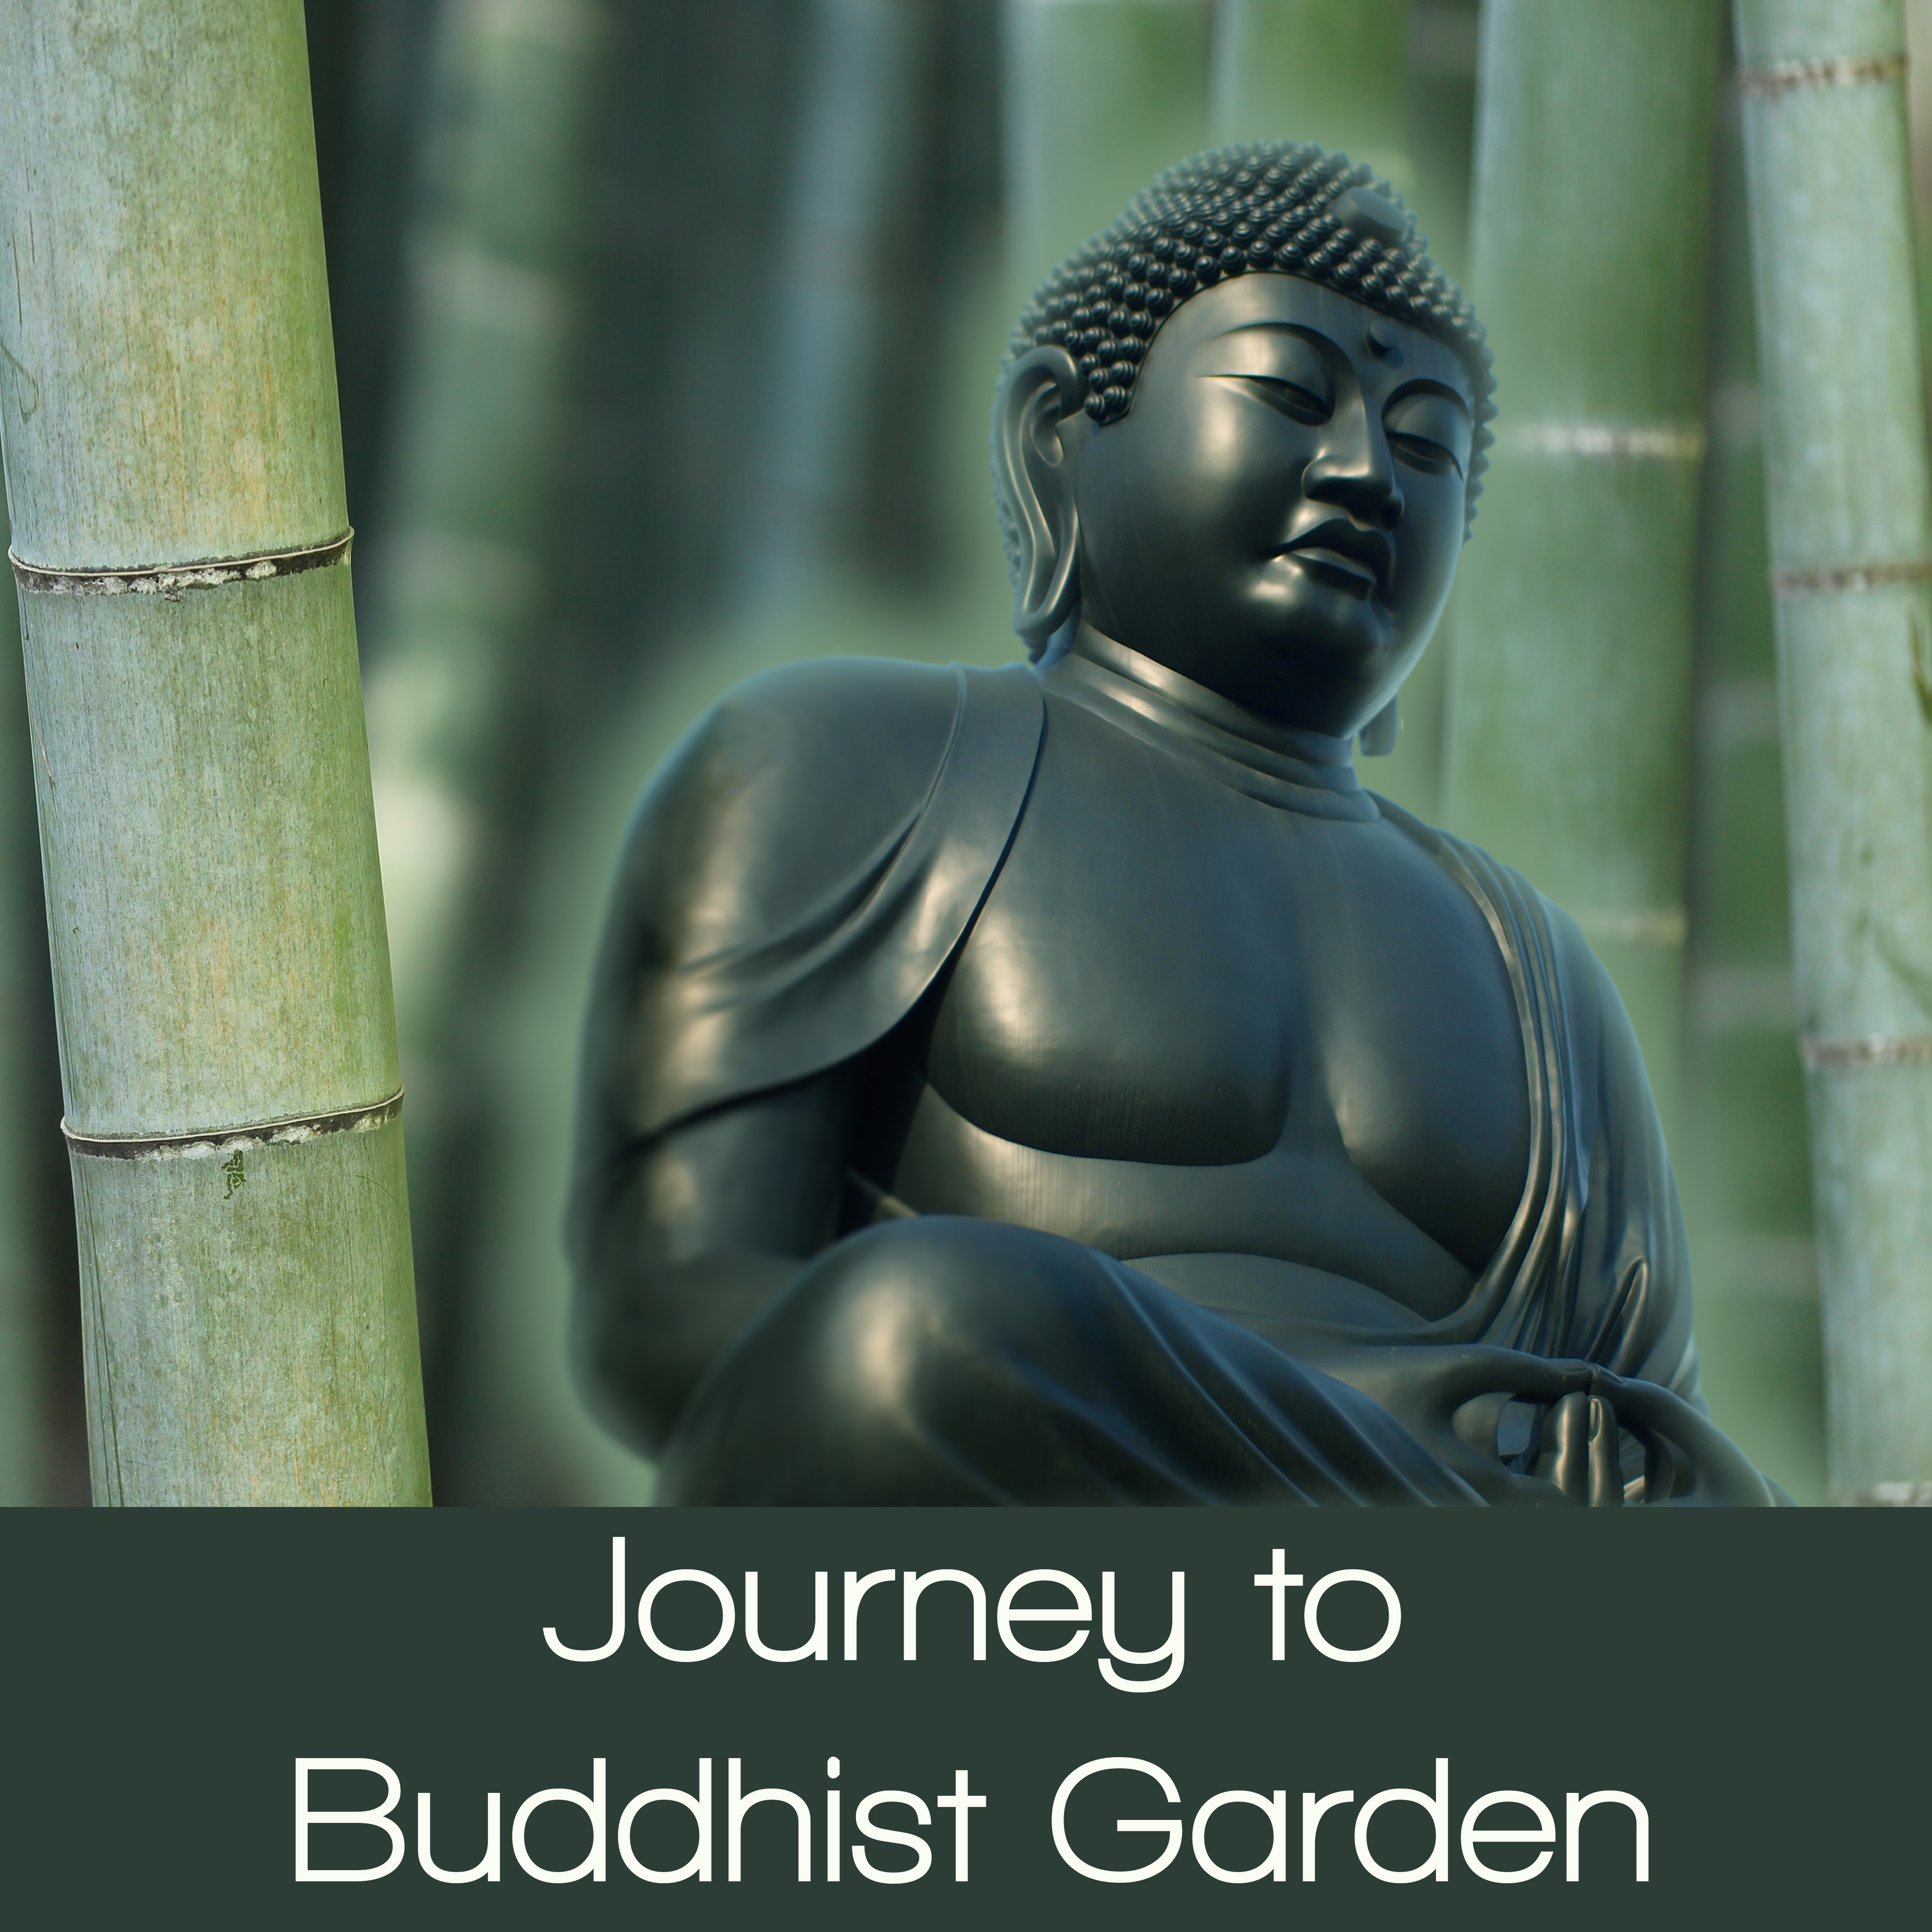 Journey to Buddhist Garden – Deep Focus, Meditation Music, Yoga Healing, Zen Garden, Peaceful Music, Nature Sounds for Better Concentration